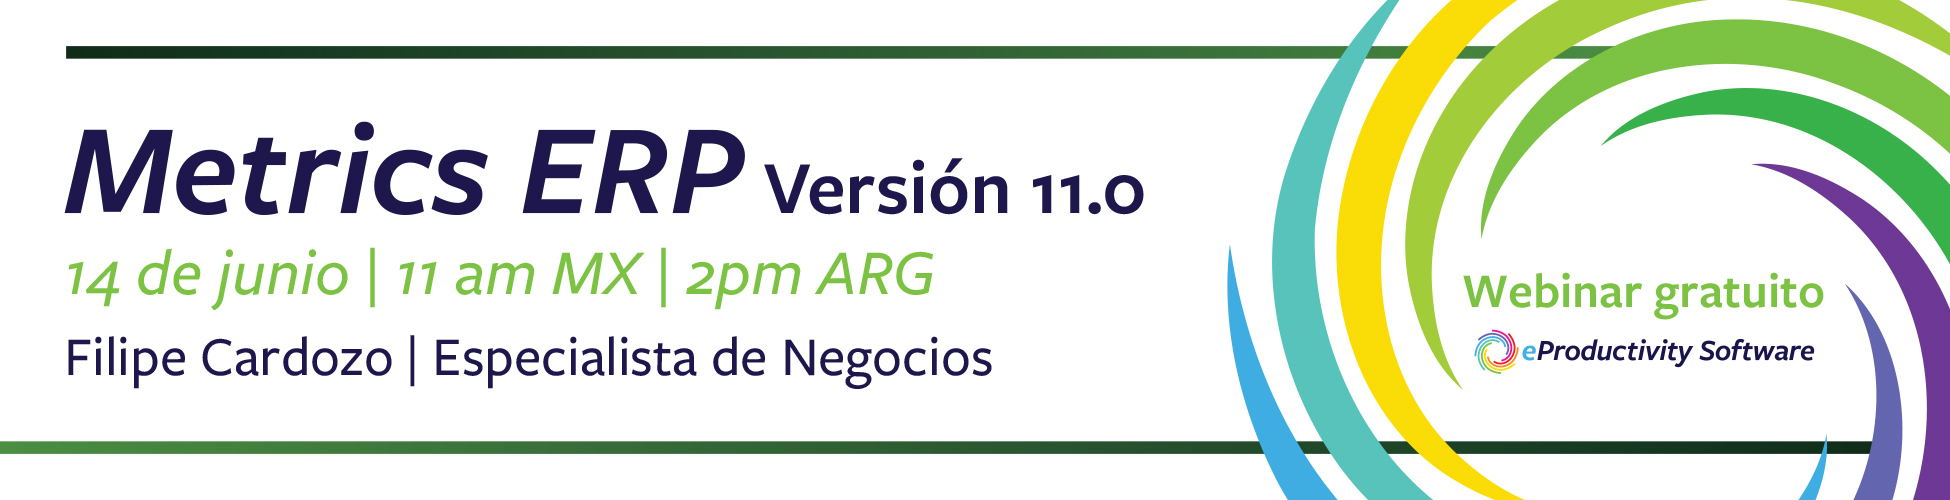 Confira as novidades da versão 11.0 do Metrics® ERP